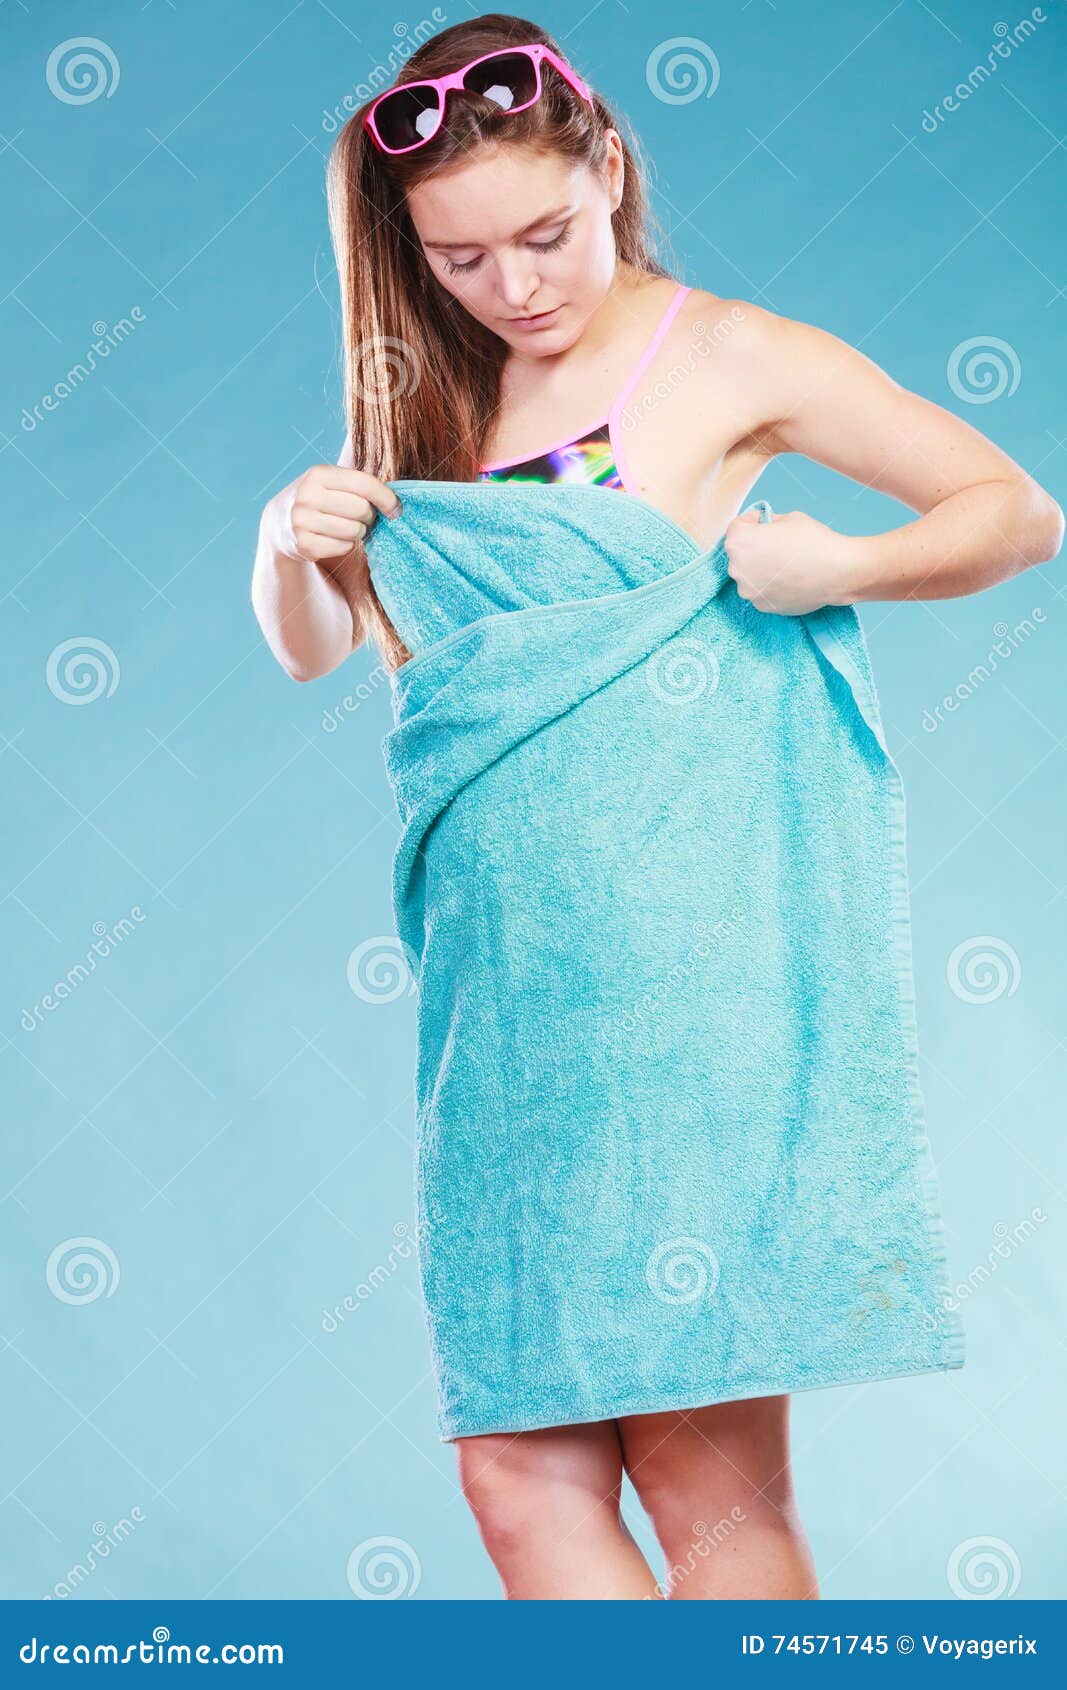 Прикрылась полотенцем. Купальник и полотенце. Юные в полотенце. Девушка в полотенце. Полотенце с девушкой в купальнике.